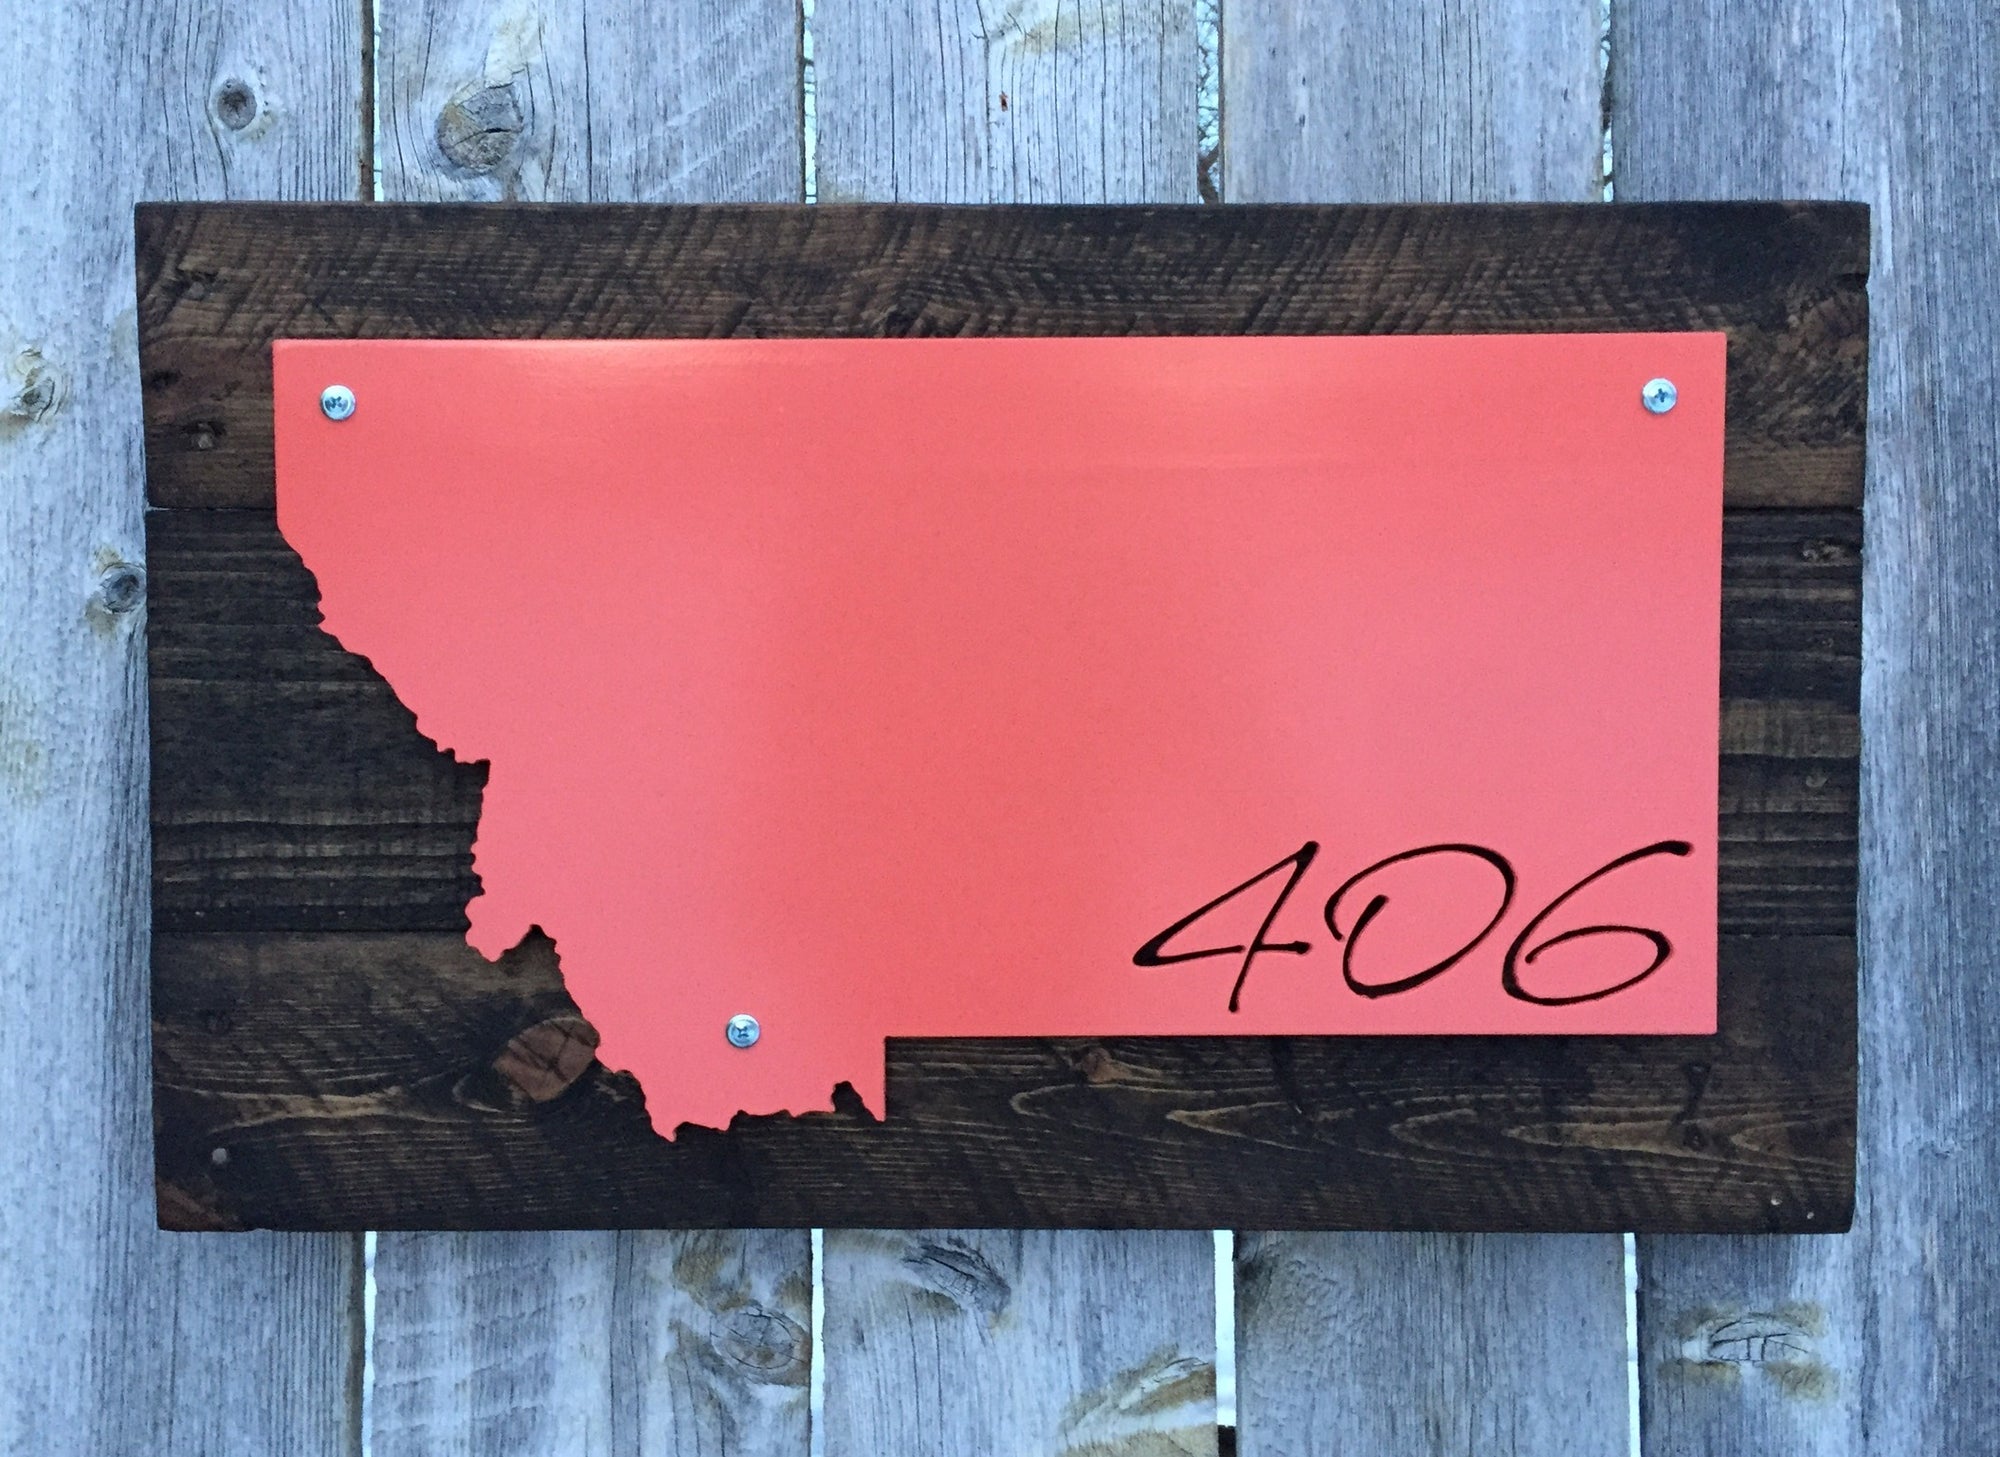 Montana 406 - Cursive Metal Sign